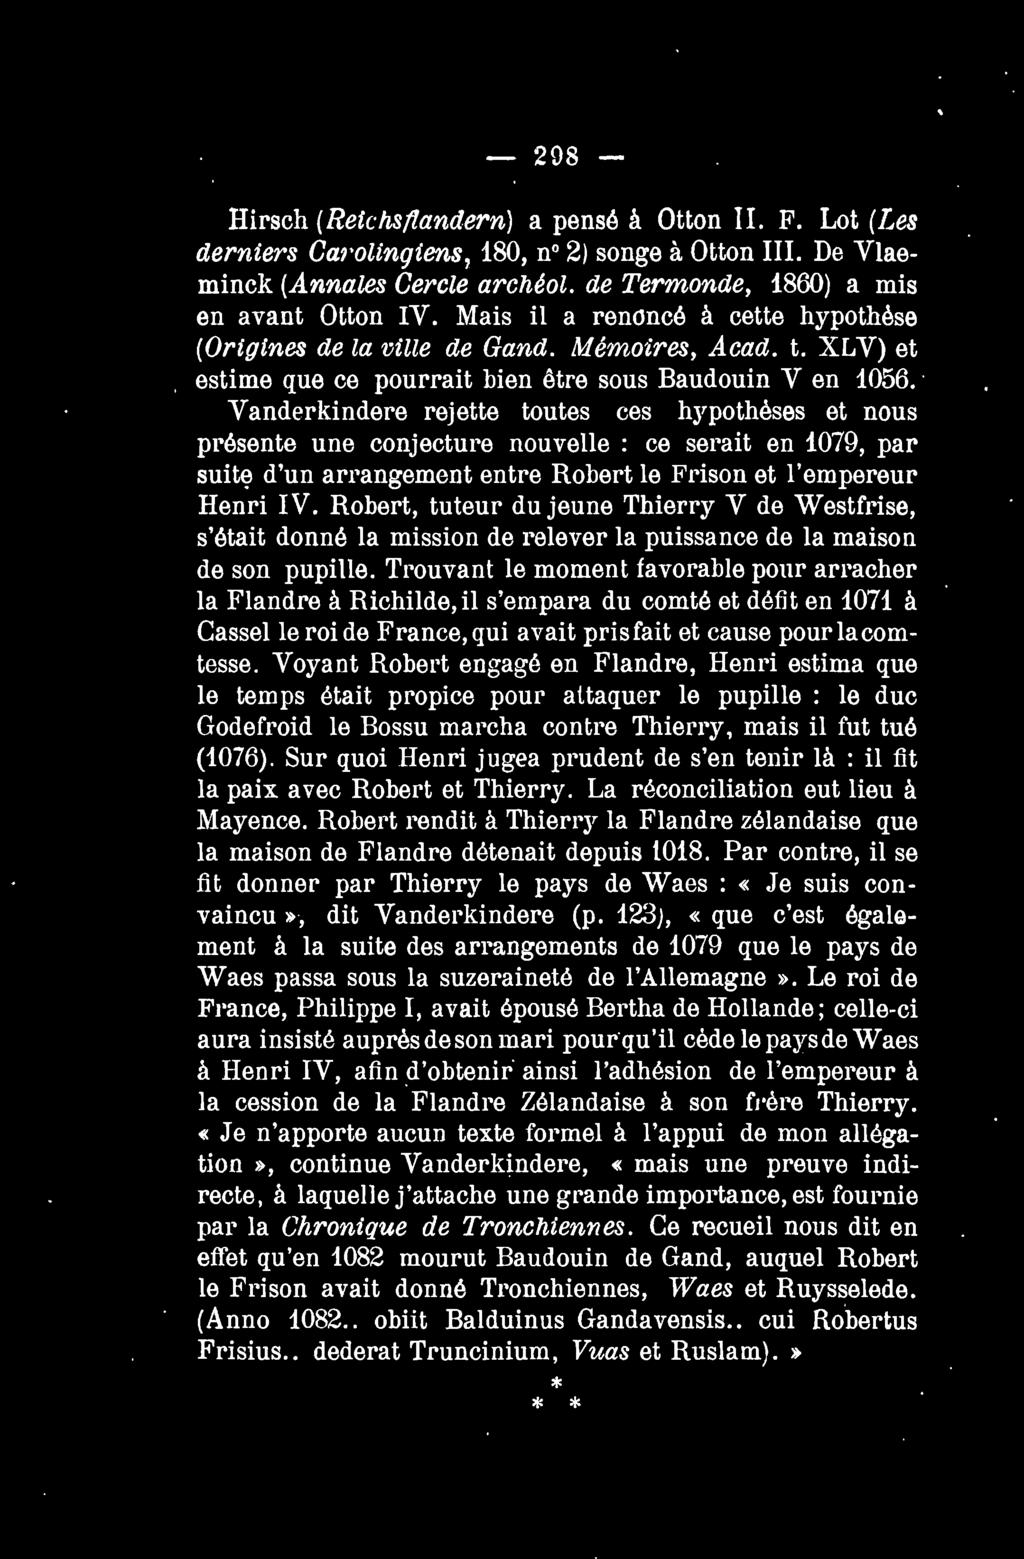 - 208- Hirsch (Reichs/landern) a pense a Otton II. F. Lot (Les derniers Cm olingiens, 180, no 2) songe a Otton III. De Vlaeminck (Annales Cercle archeol. de Termonde, 1860) a mis en avant Otton IV.